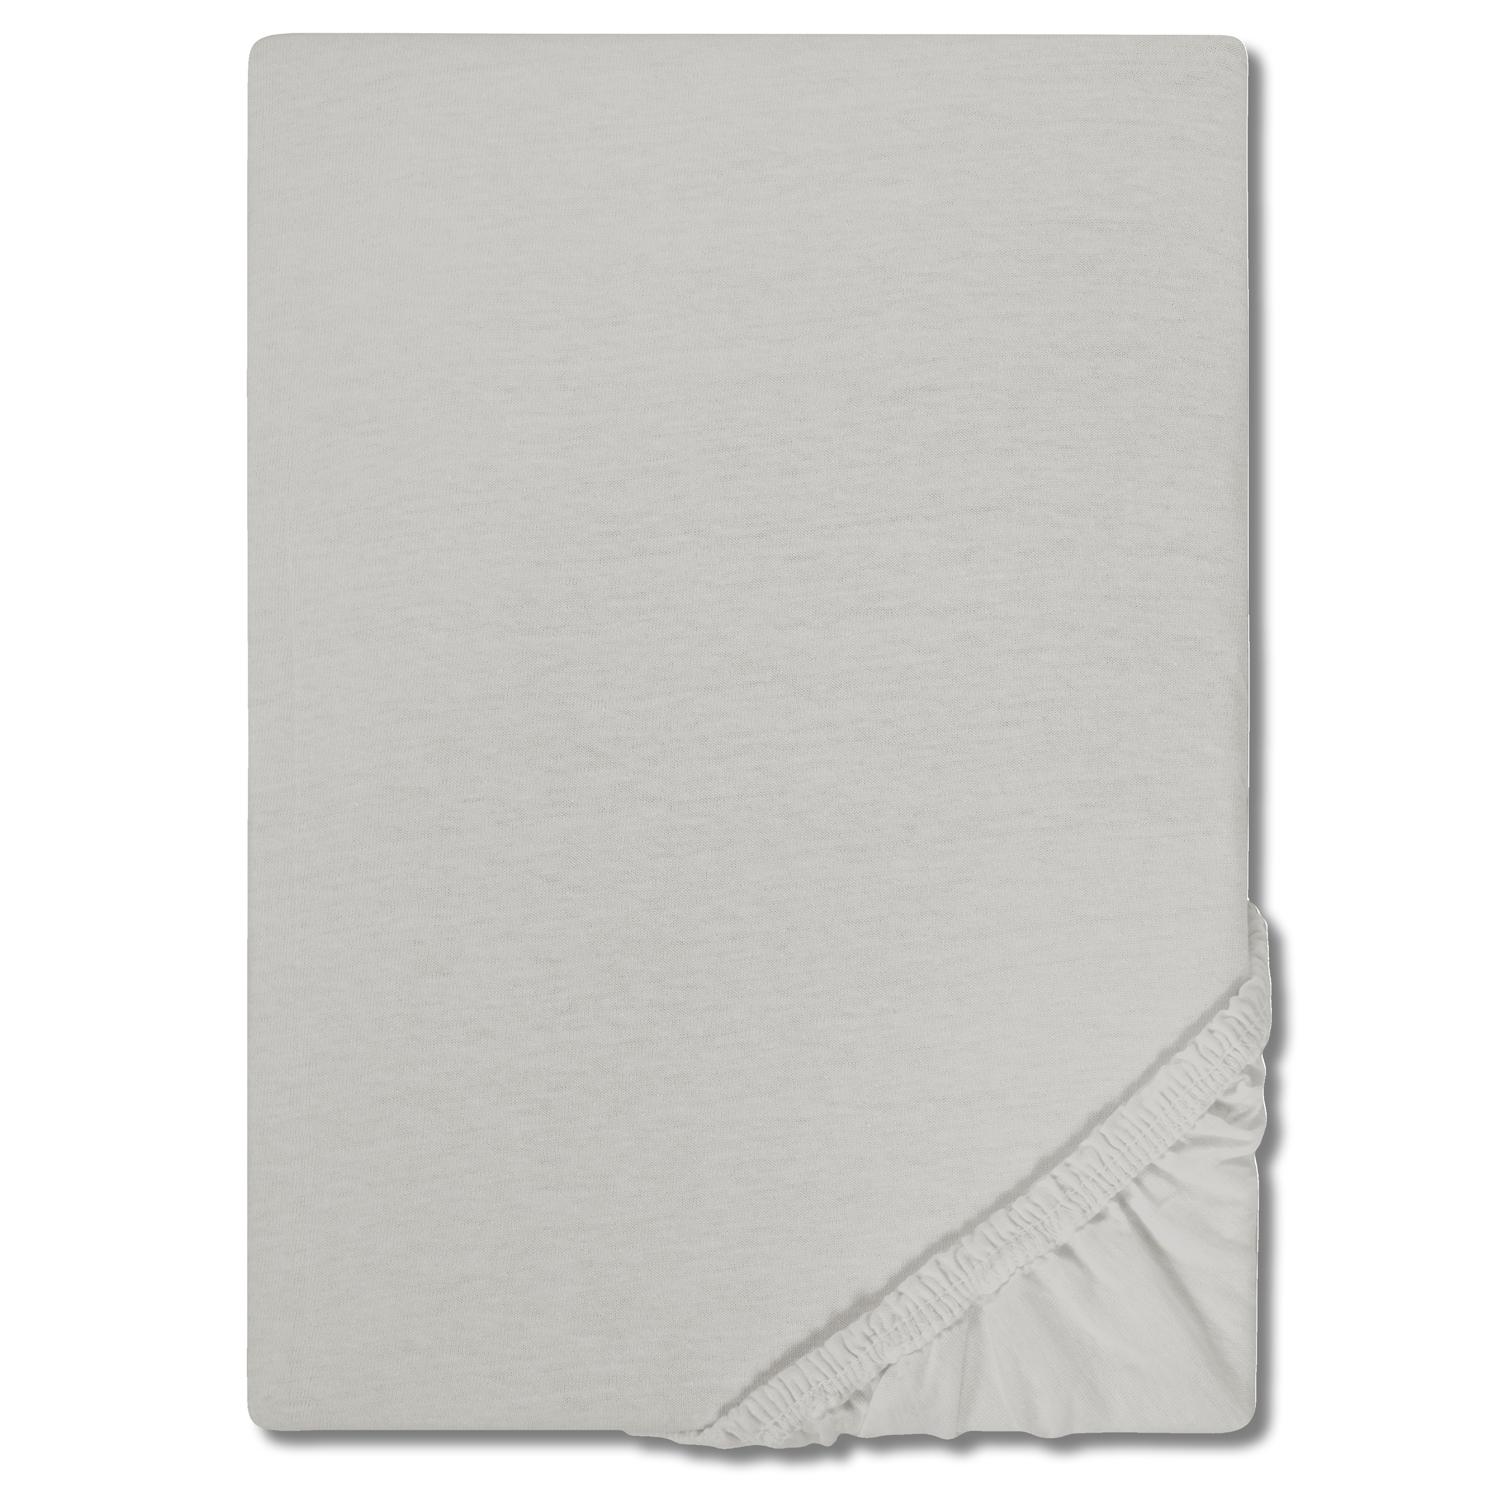 CloudComfort Basic drap-housse jersey stretch argent gris 140 x 190 - 160 x 200 cm